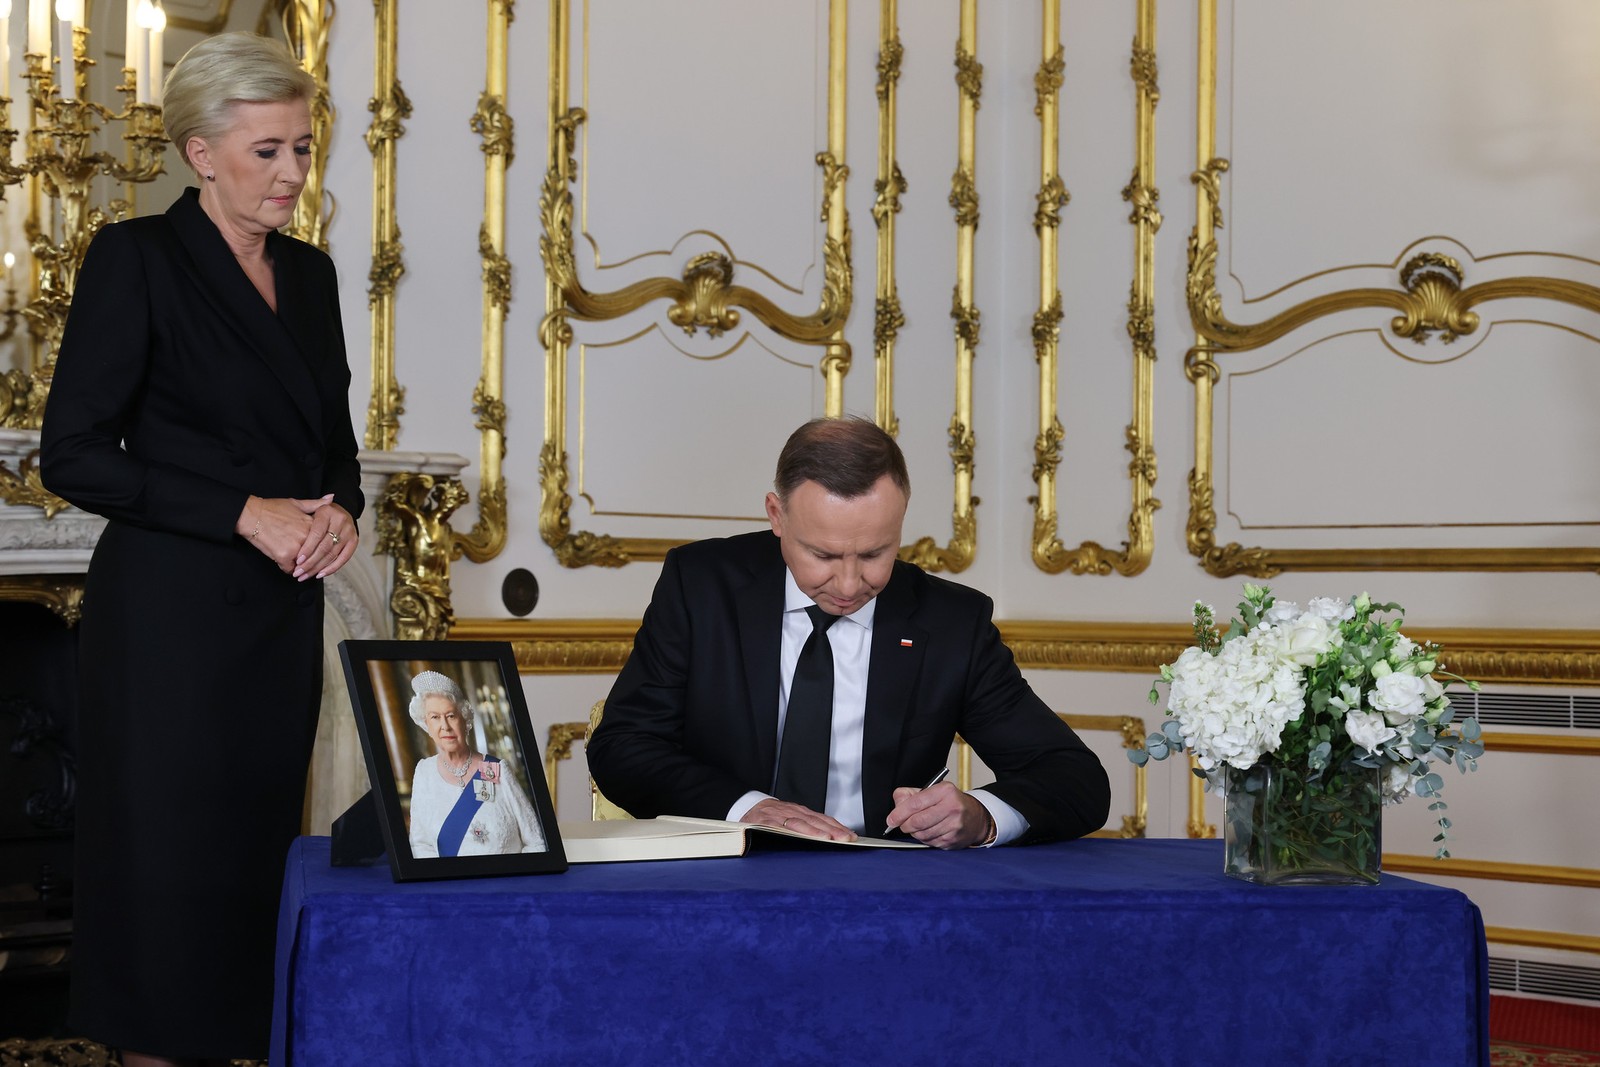 Andrzej Duda, presidente da Polônia, assina o livro de condolências acompanhado da primeira-dama Agata Kornhauser-Duda — Foto: Rory Arnold